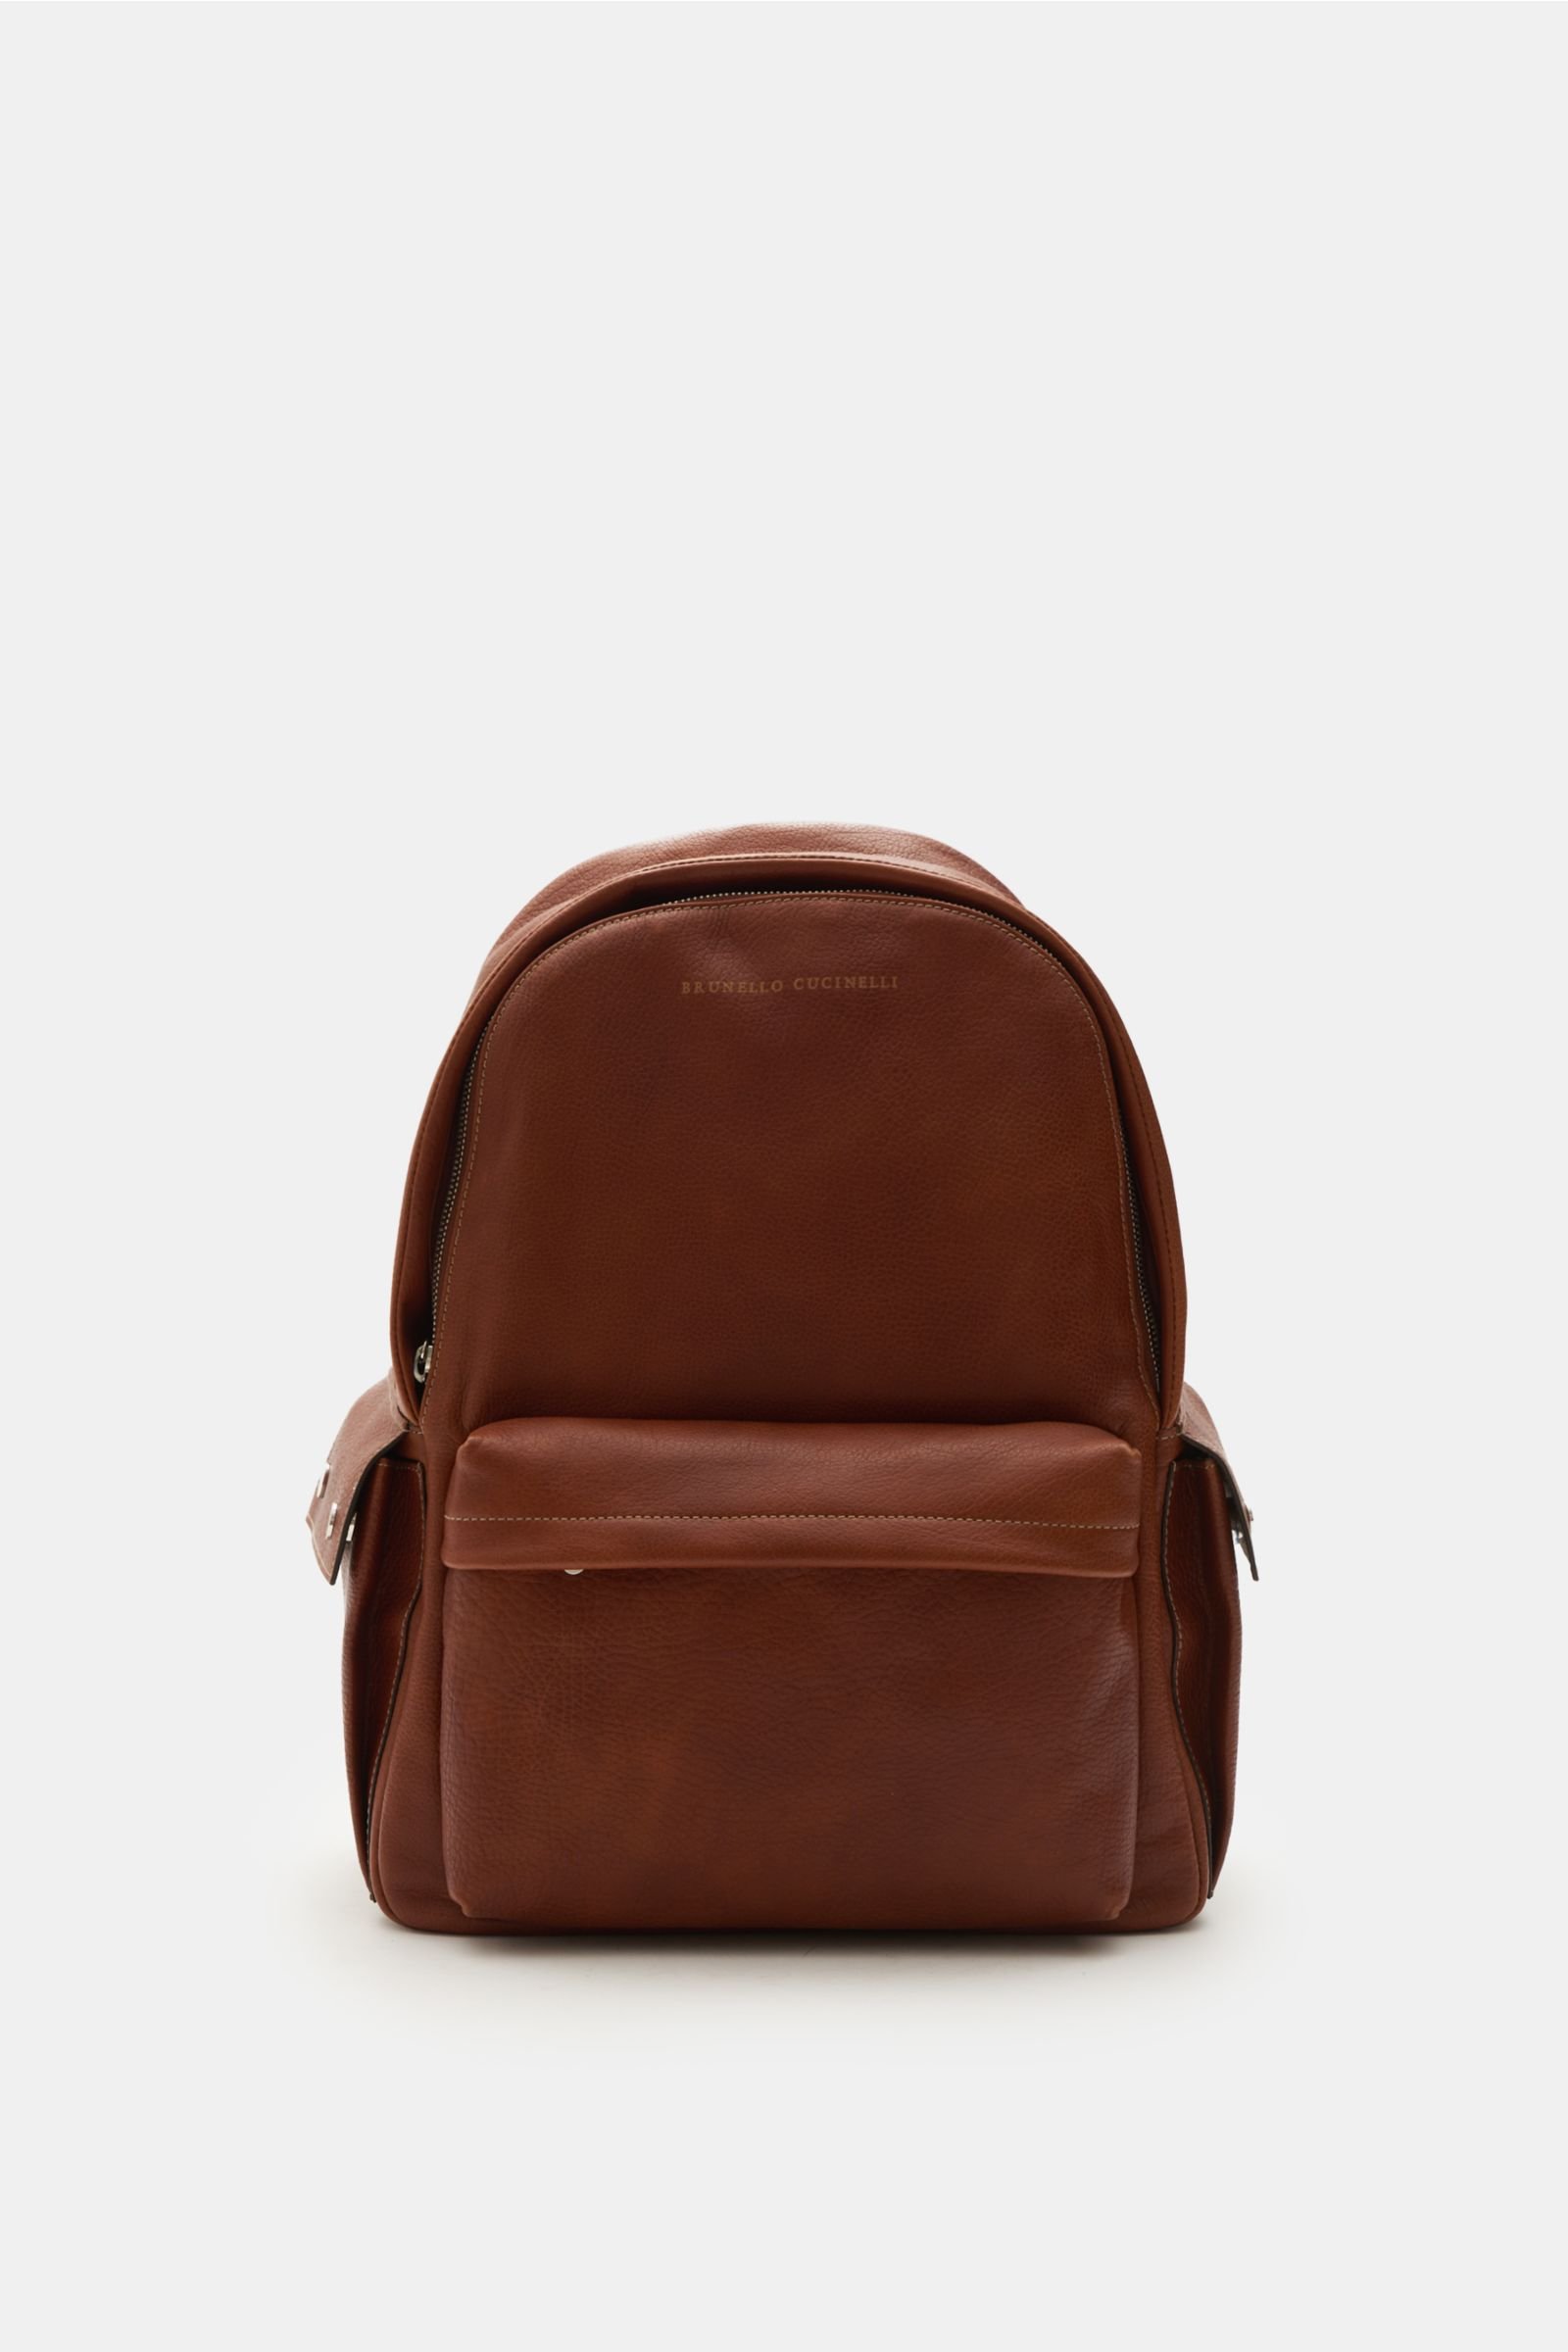 Backpack brown